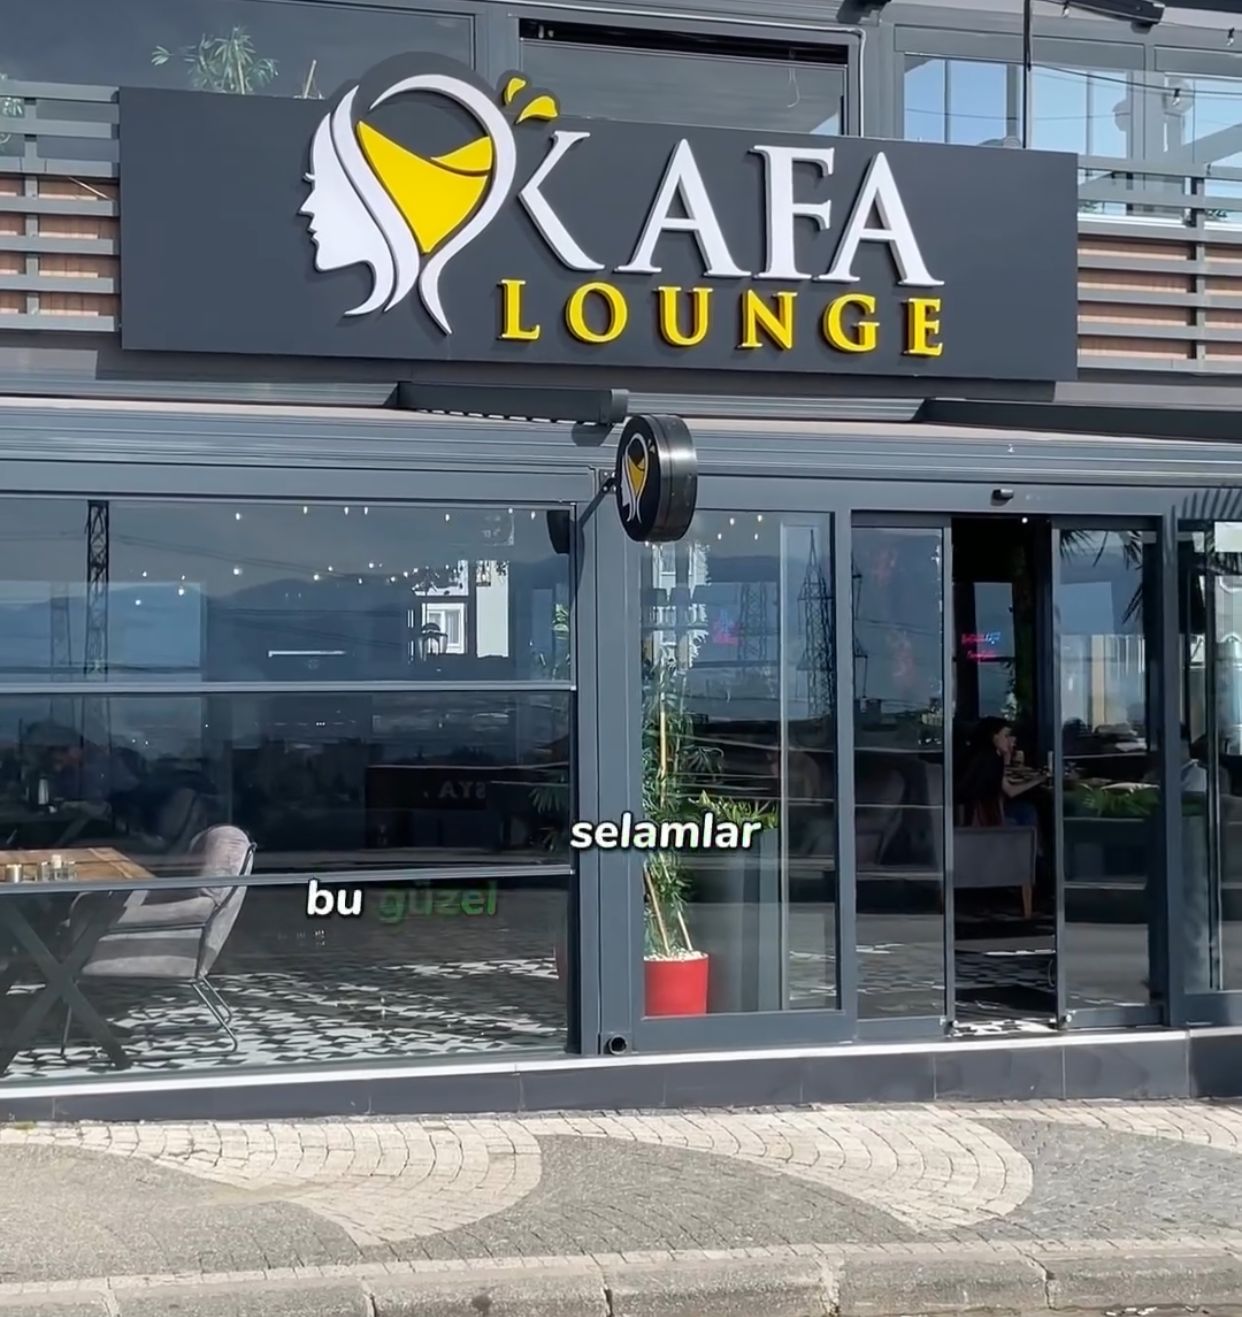 Kafa Lounge